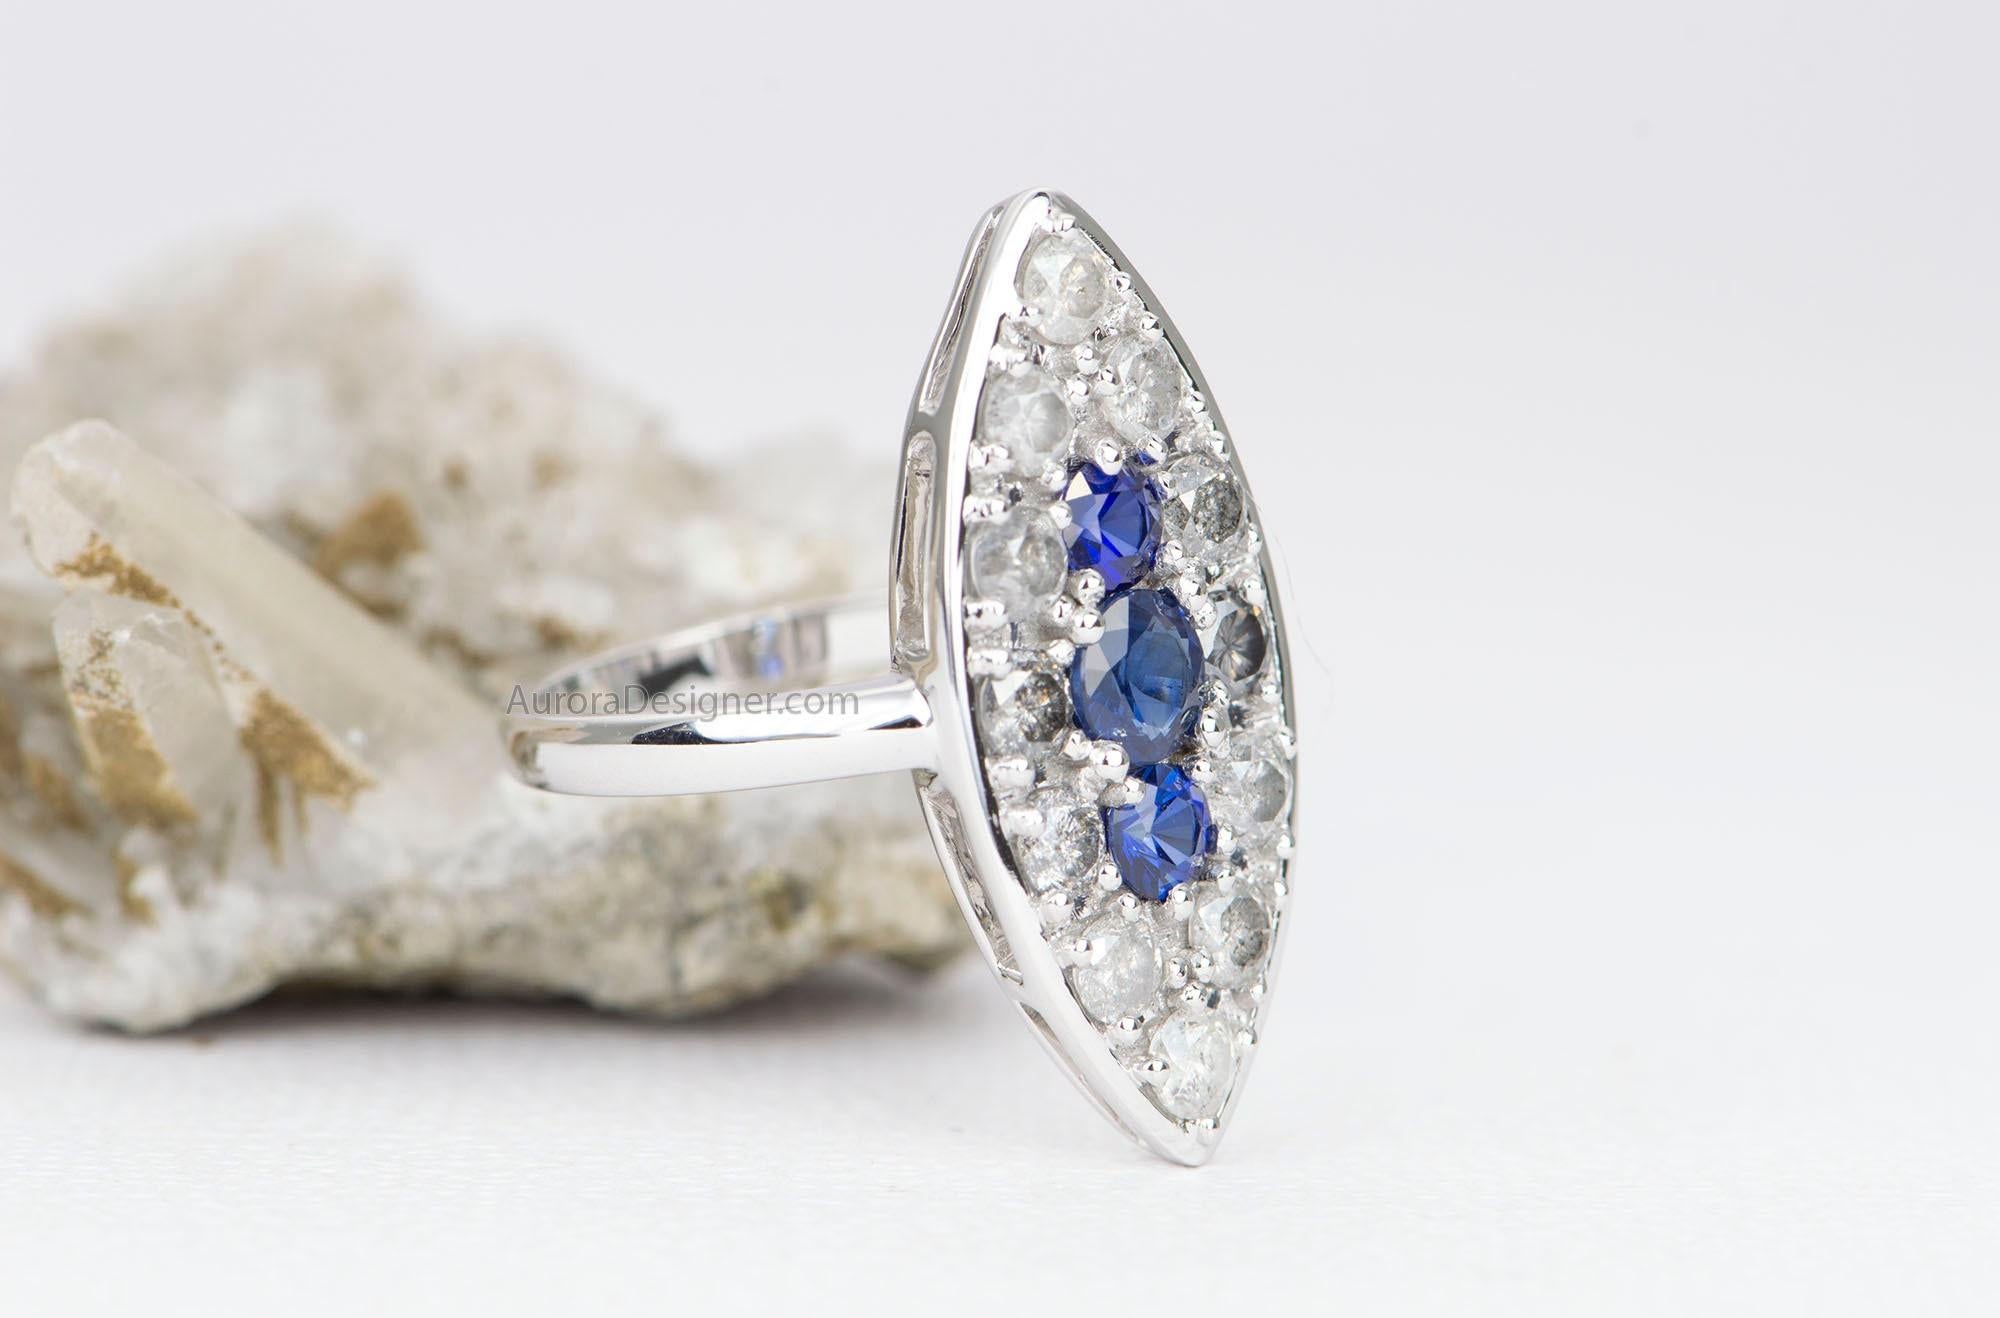 ♥  Dieser Ring ist von der viktorianischen Ära inspiriert und im Stil eines Navette-Rings gestaltet.
♥  Drei königsblaue Saphire sind in der Mitte gefasst und dann von einem Ring aus ombrefarbenen Diamanten umgeben, die von milchig weiß bis